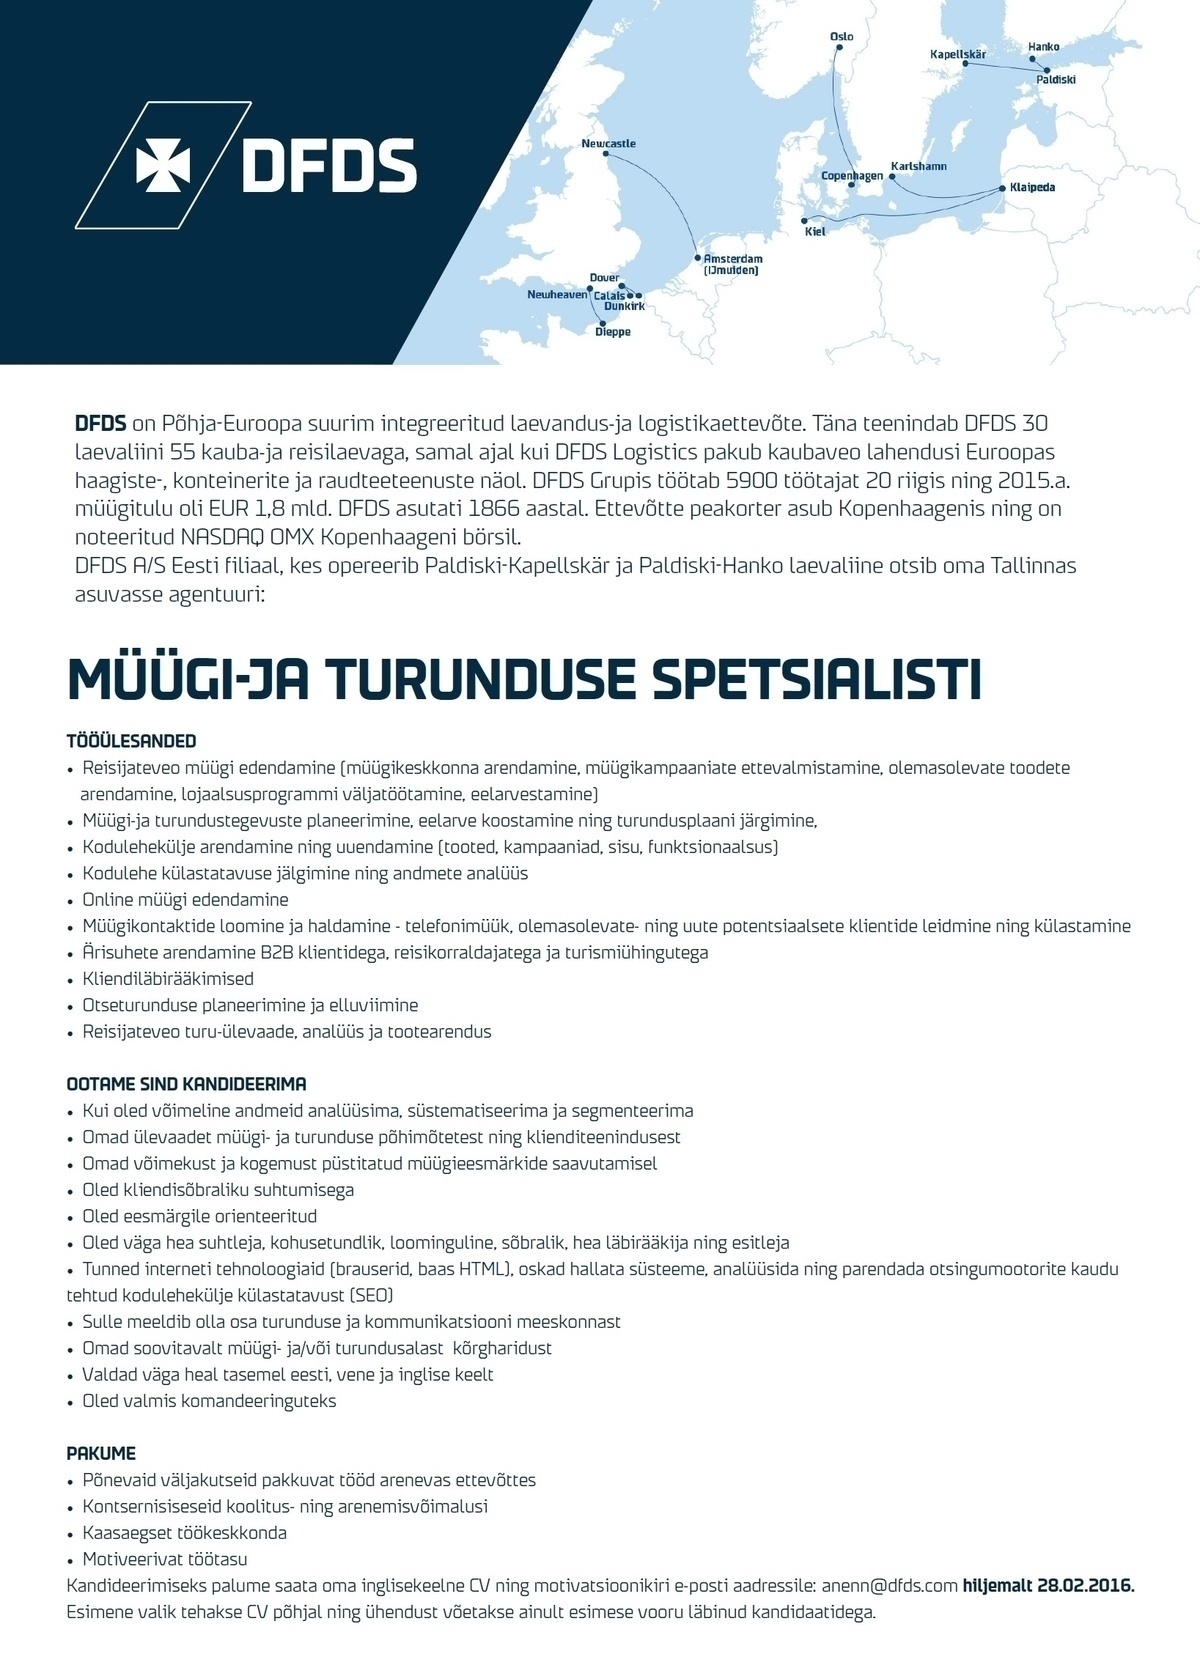 DFDS A/S Eesti Filiaal MÜÜGI-JA TURUNDUSE SPETSIALIST